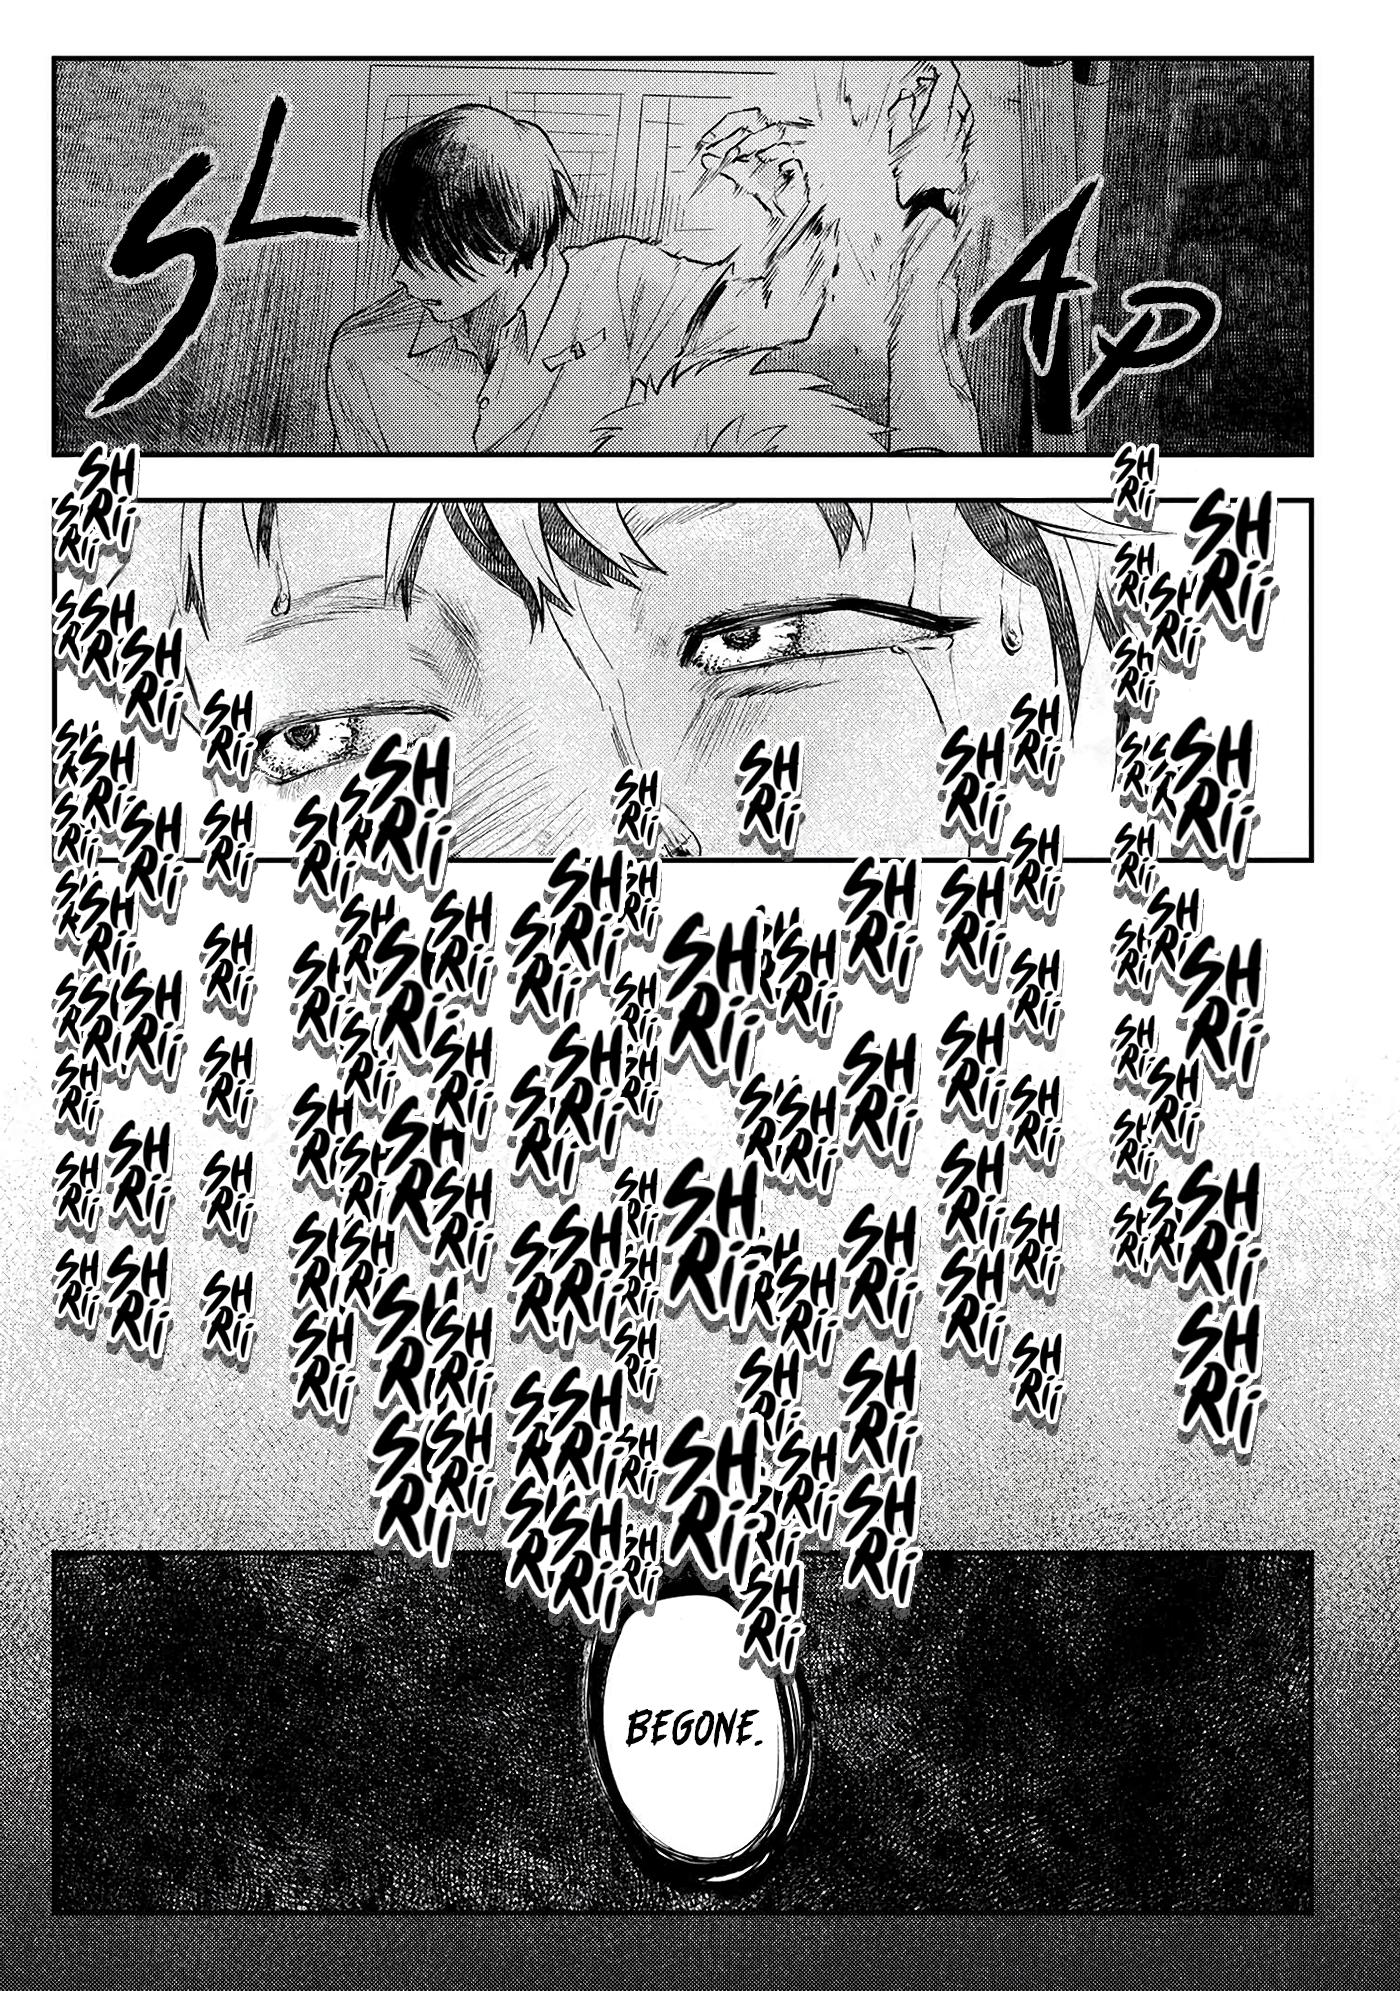 Read Hikaru Ga Shinda Natsu 7 - Oni Scan